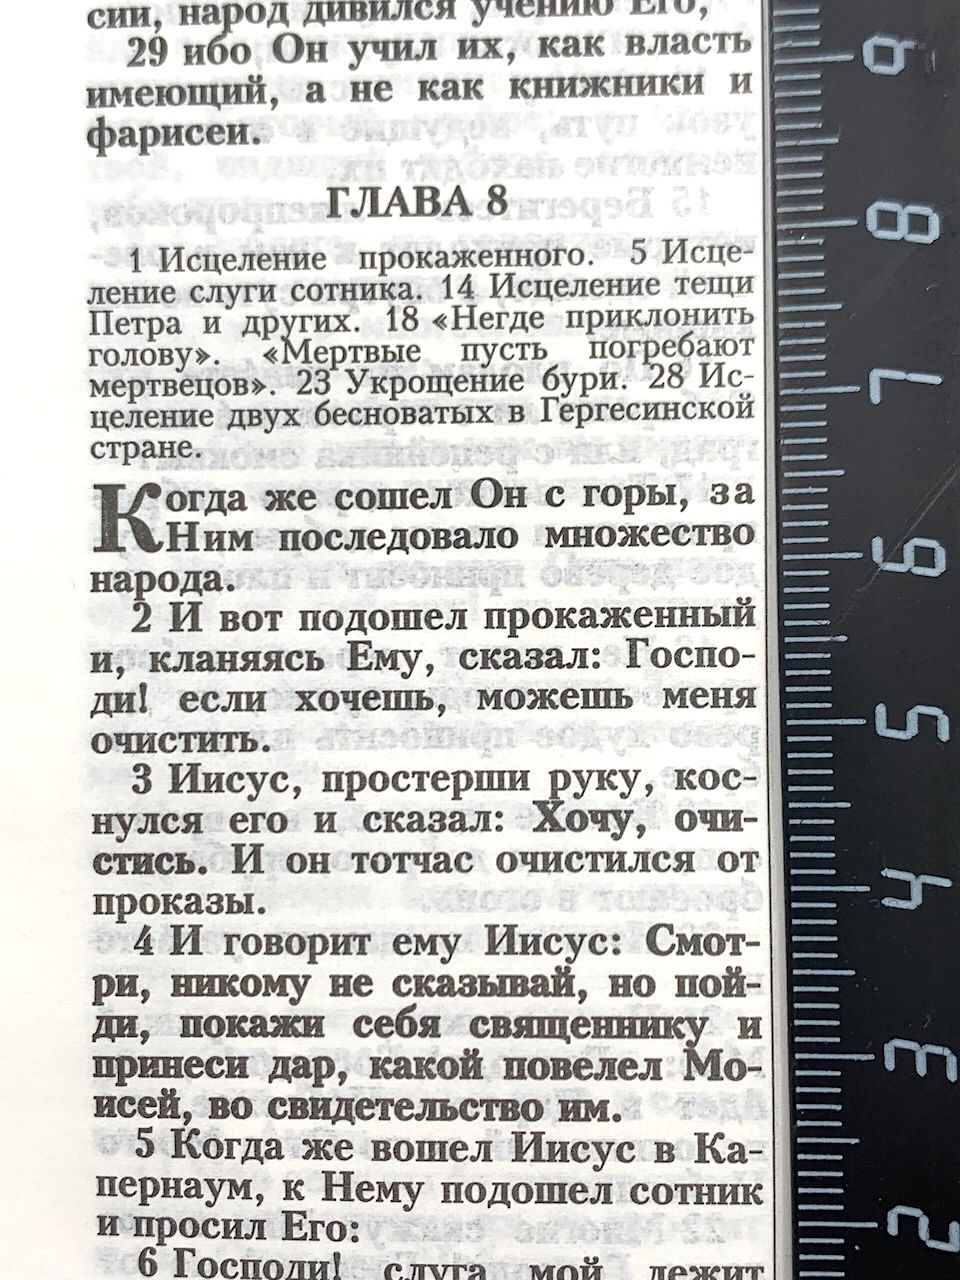 Библия 048 zti код 24048-18 дизайн "Библия с вензелем", переплет из искусственой кожи  на молнии с индексами, цвет черный формат 125*195 мм